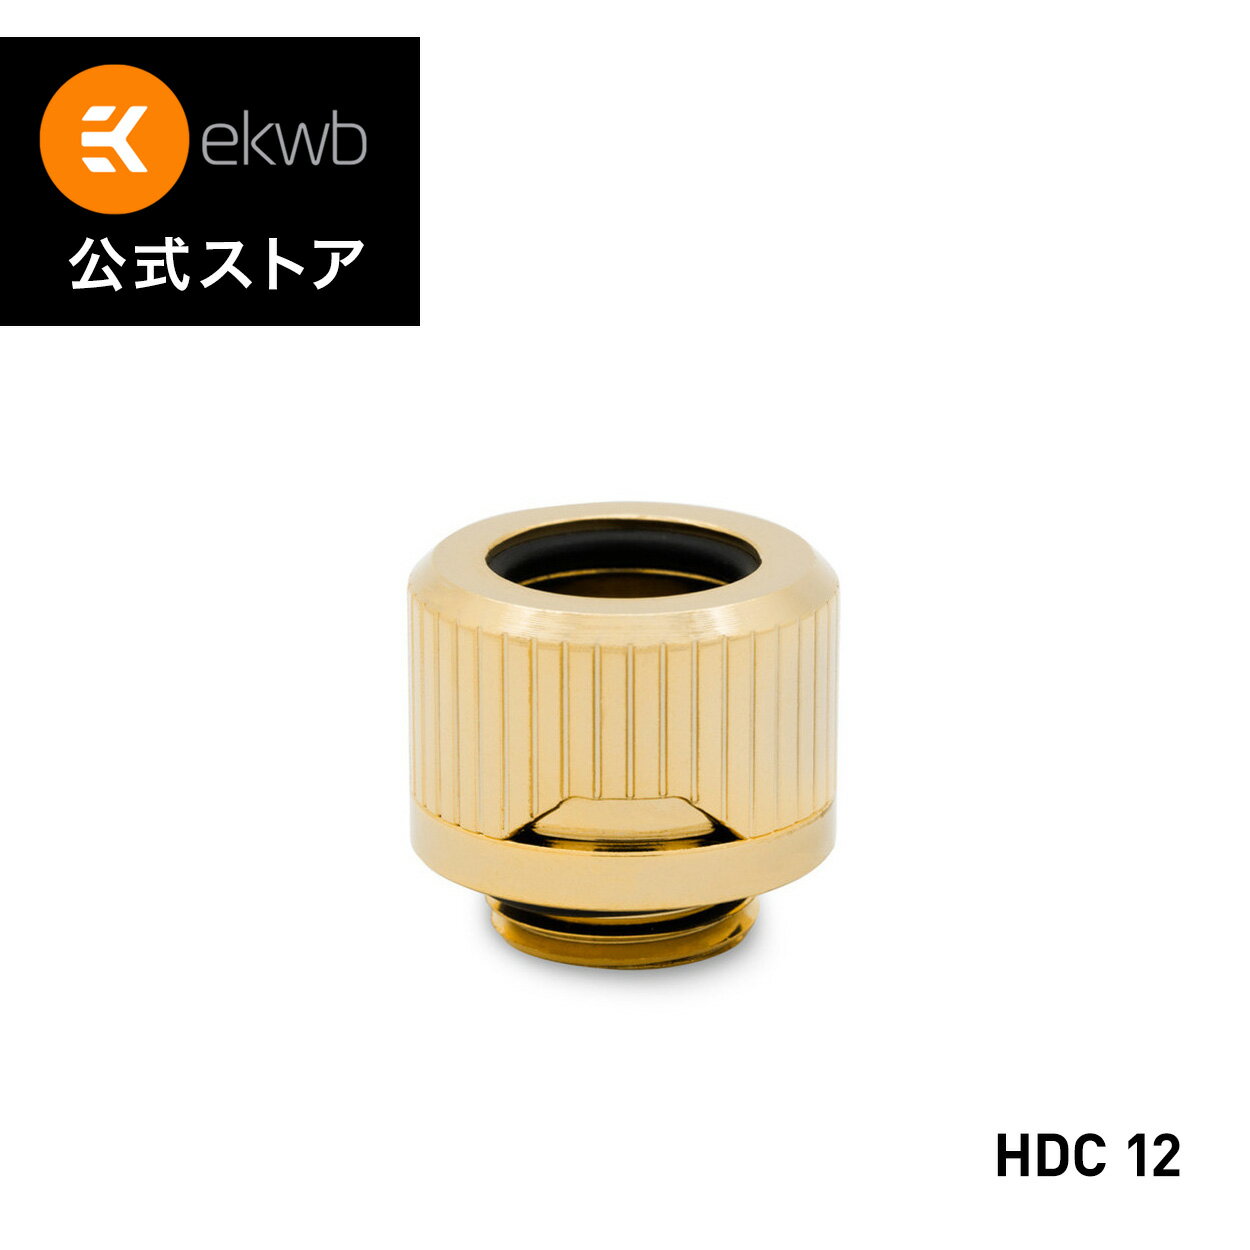 EK-Quantum Torque HDC 12 - Gold